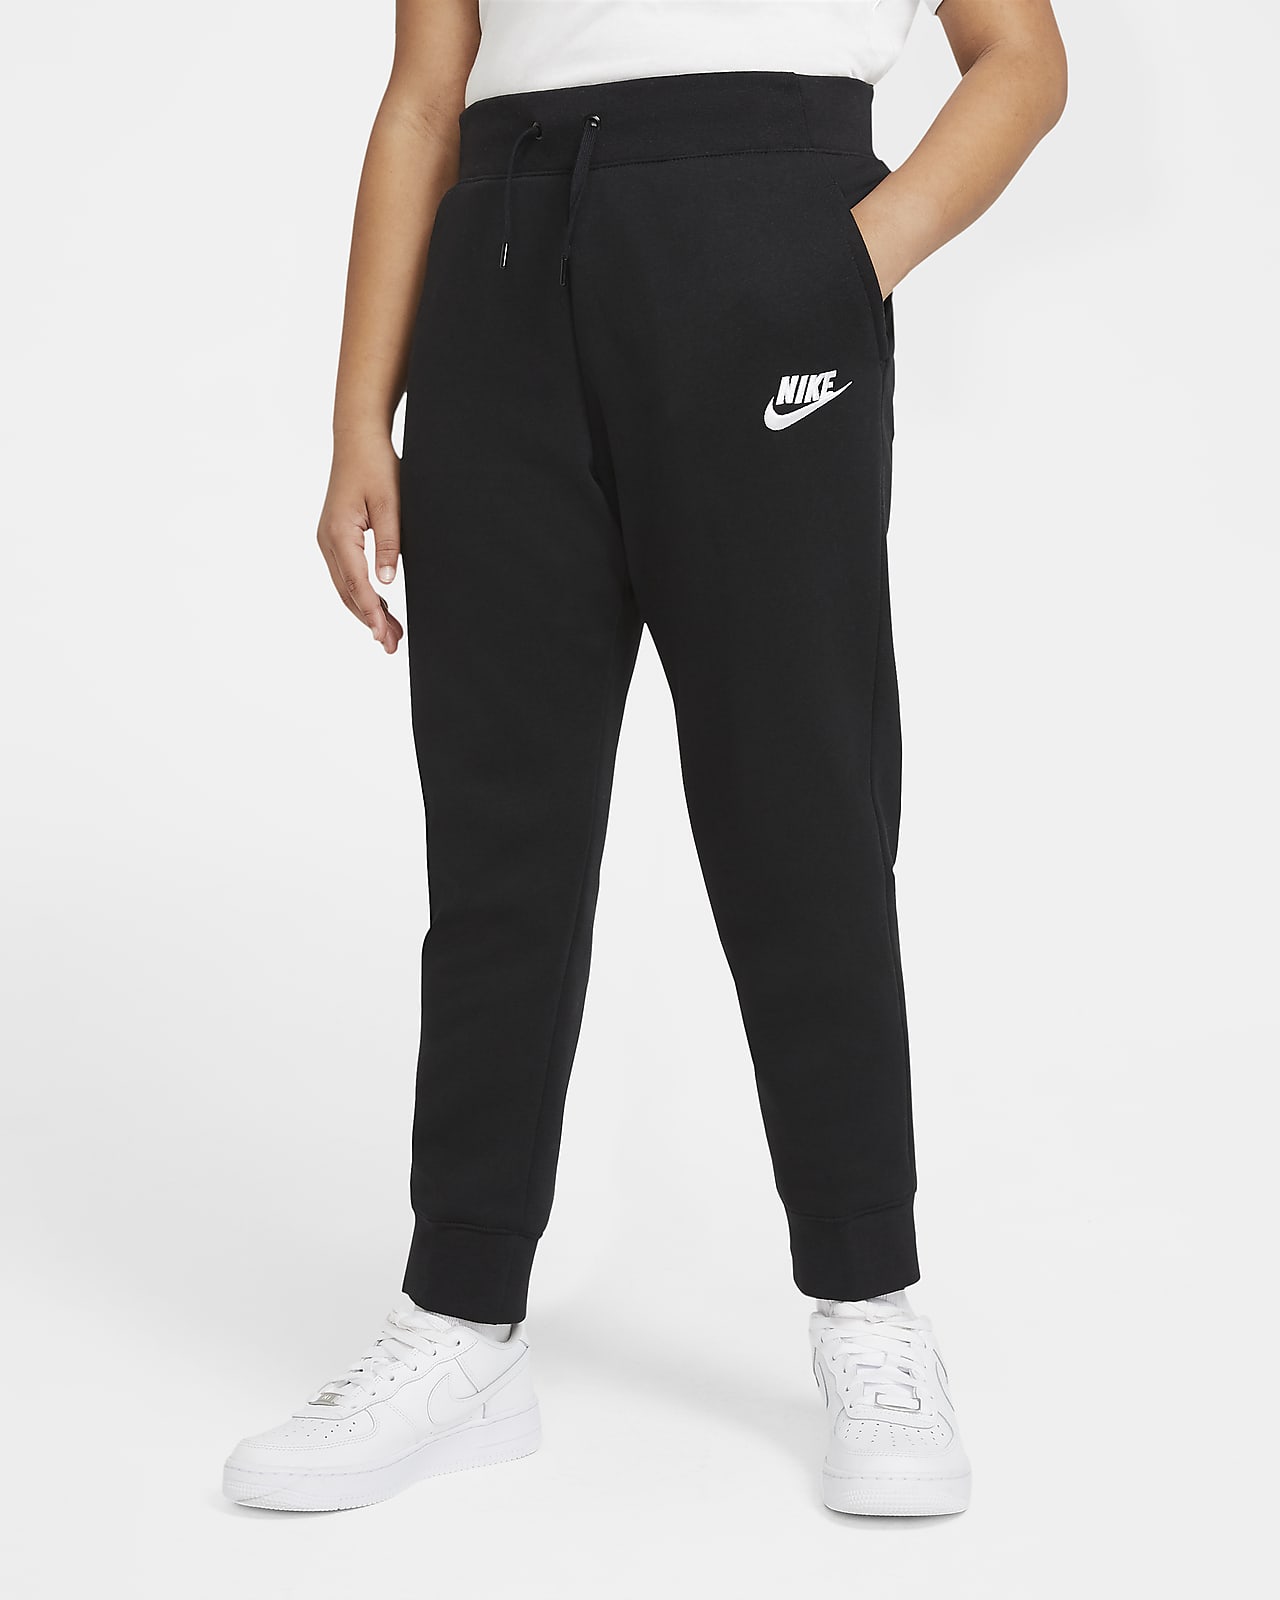 Nike Sportswear Hose für ältere Kinder (Mädchen) (große Größe)